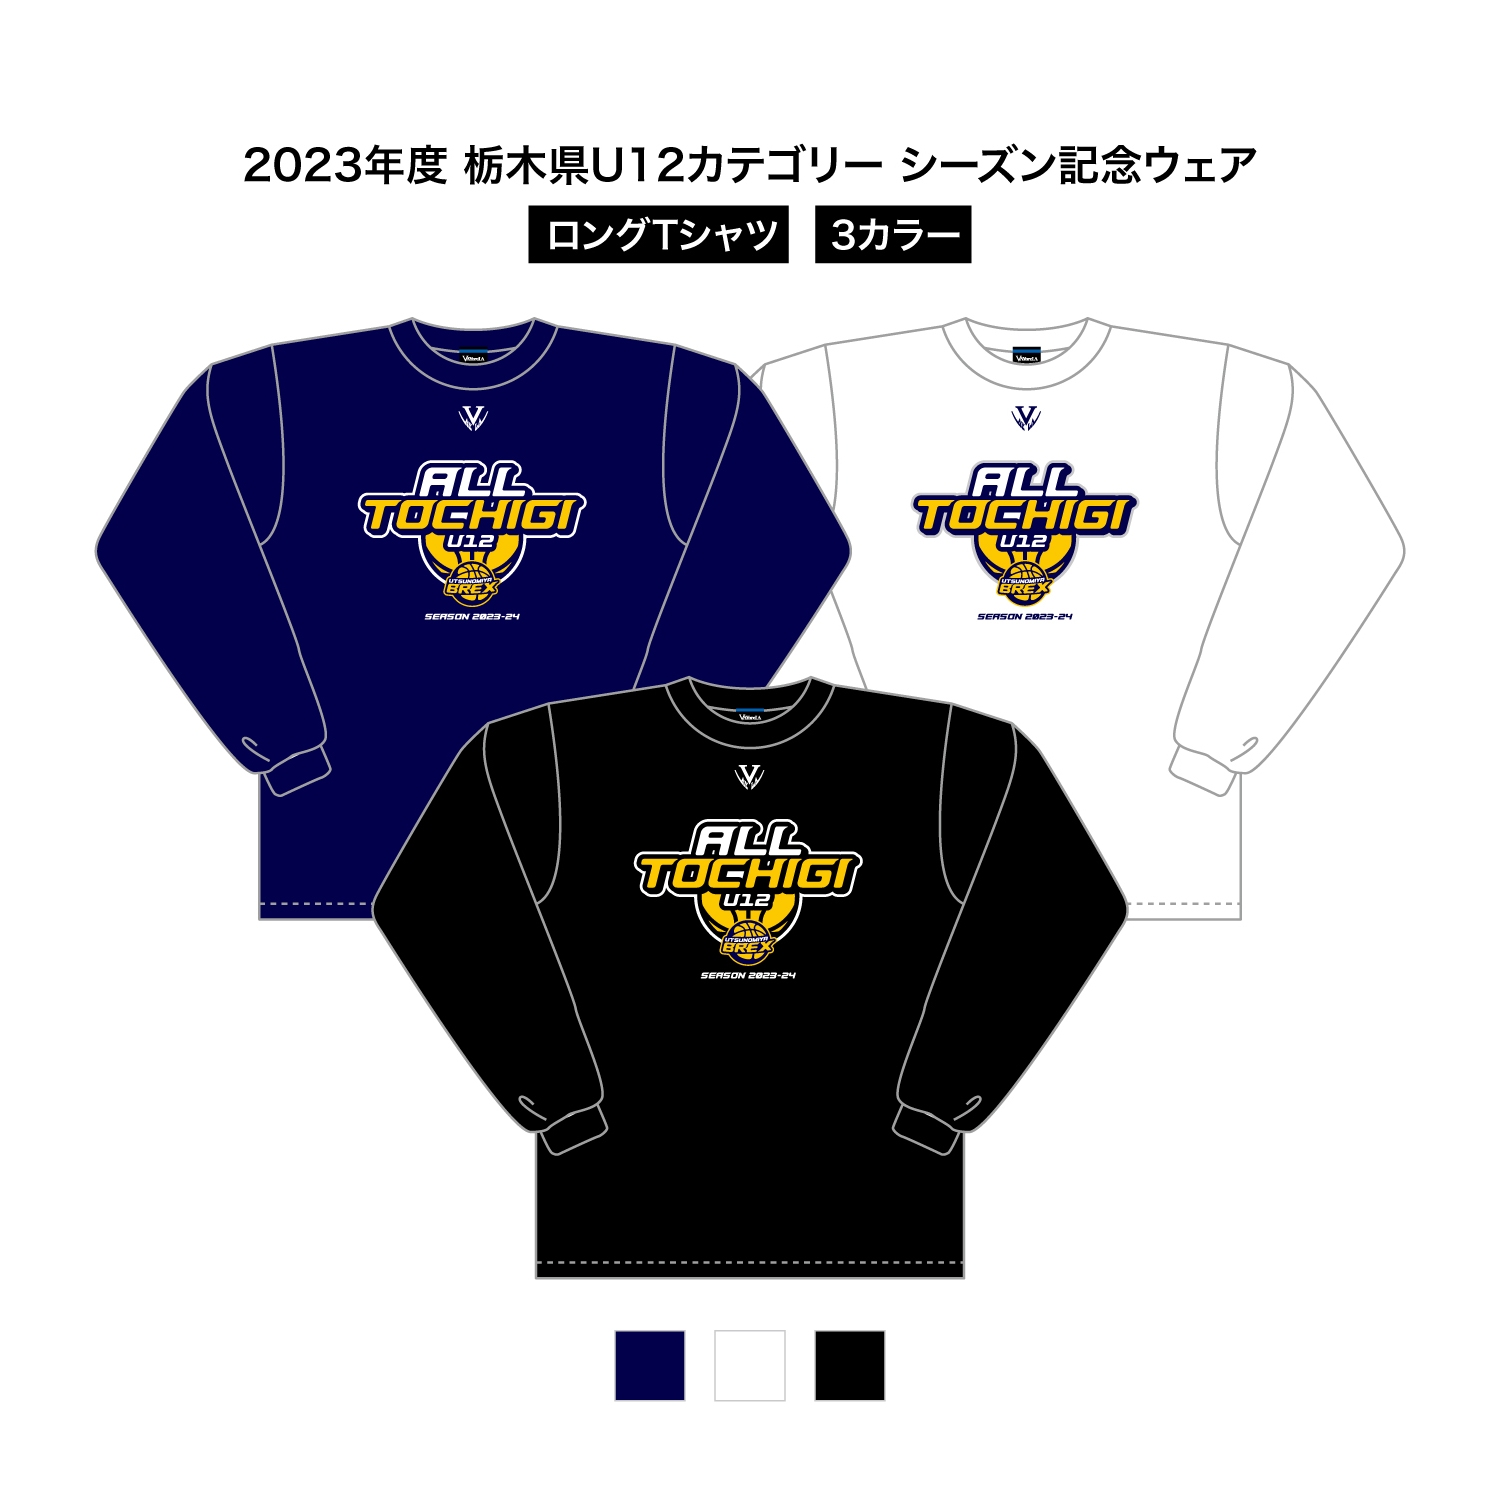 2023 栃木県U12 シーズン記念ウェア ドライロングスリーブTシャツ